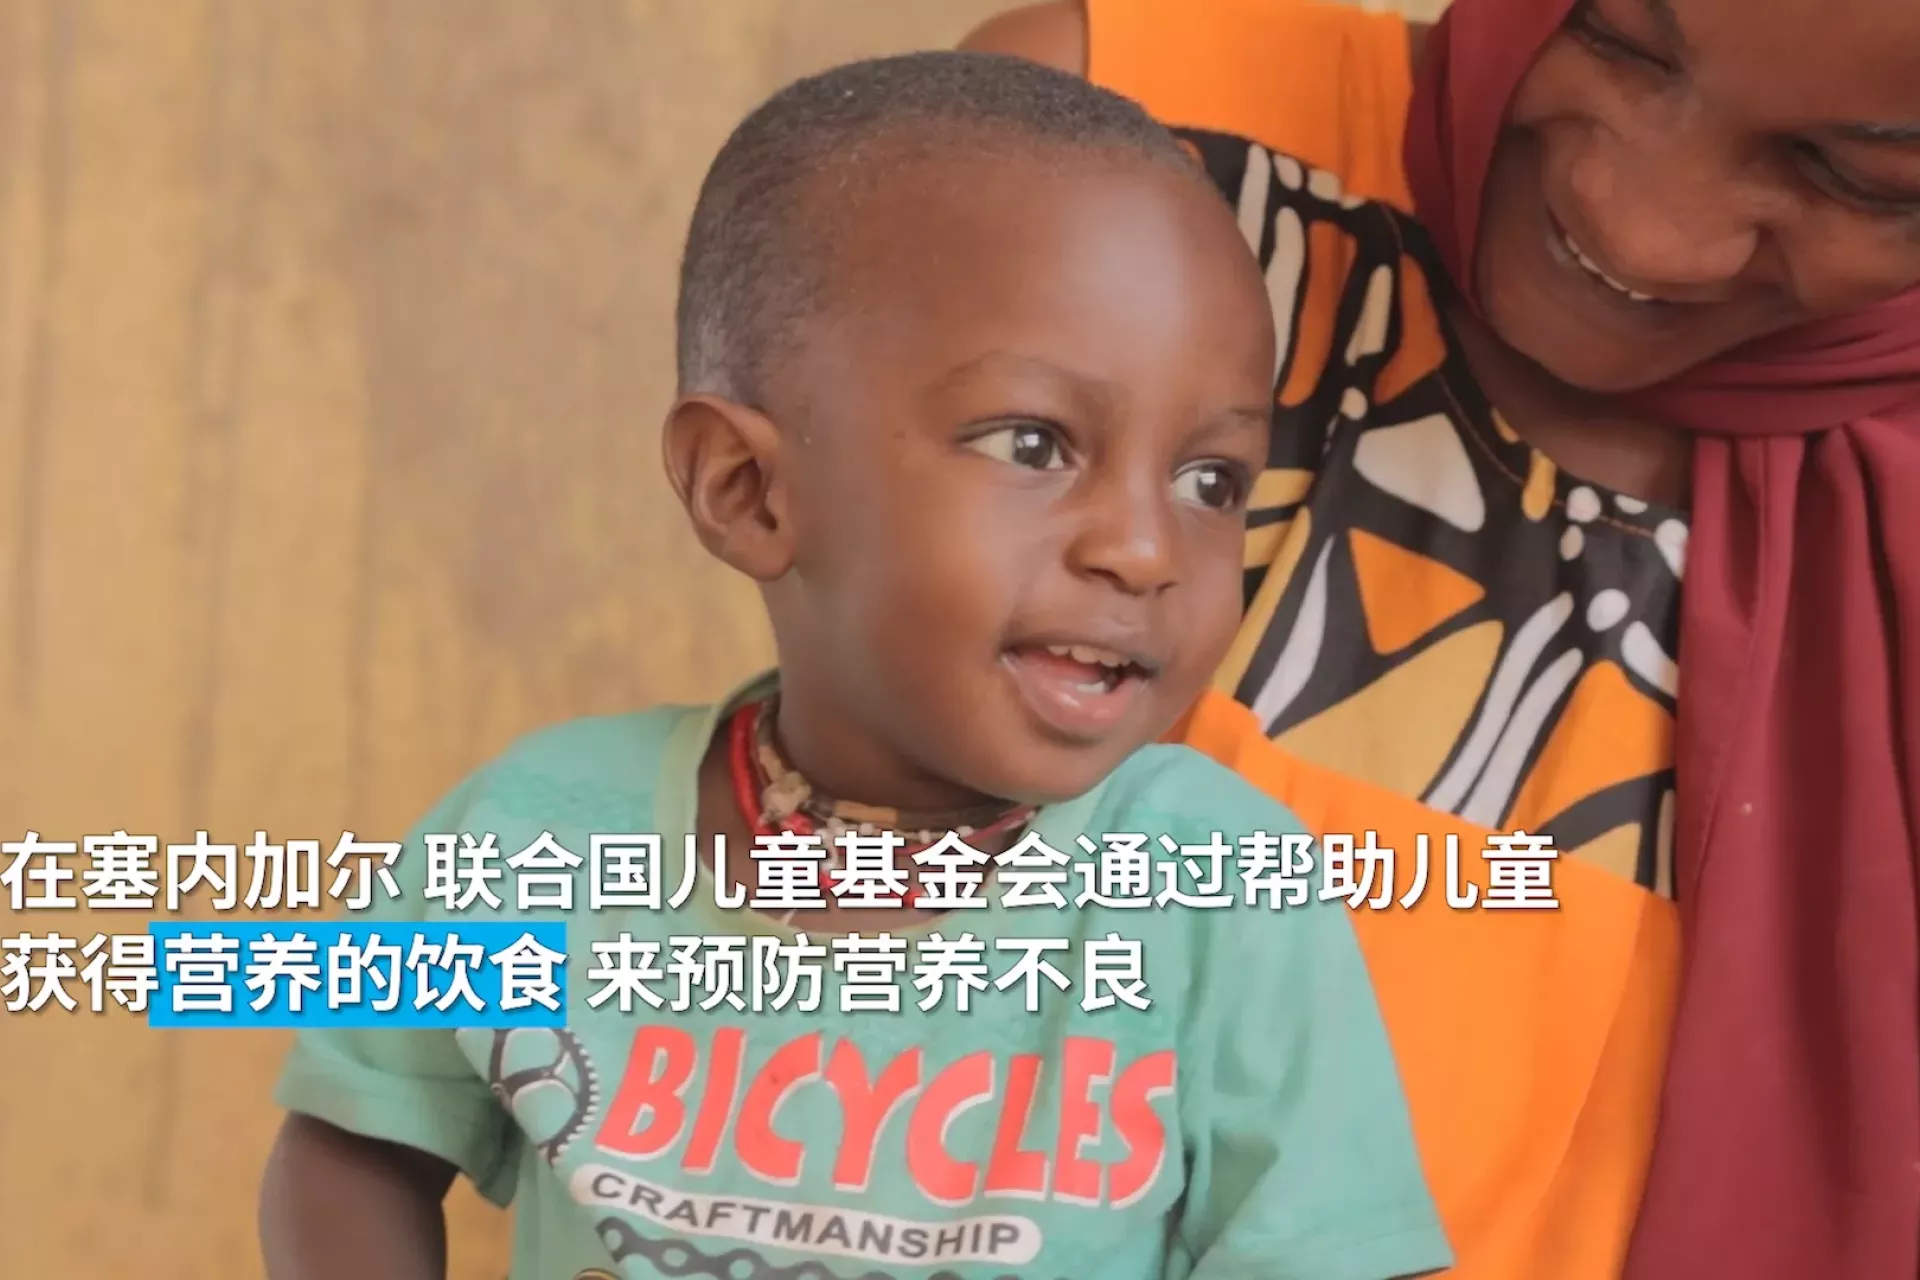 在联合国儿童基金会和中国政府的支持下，塞内加尔患营养不良的儿童得到了治疗